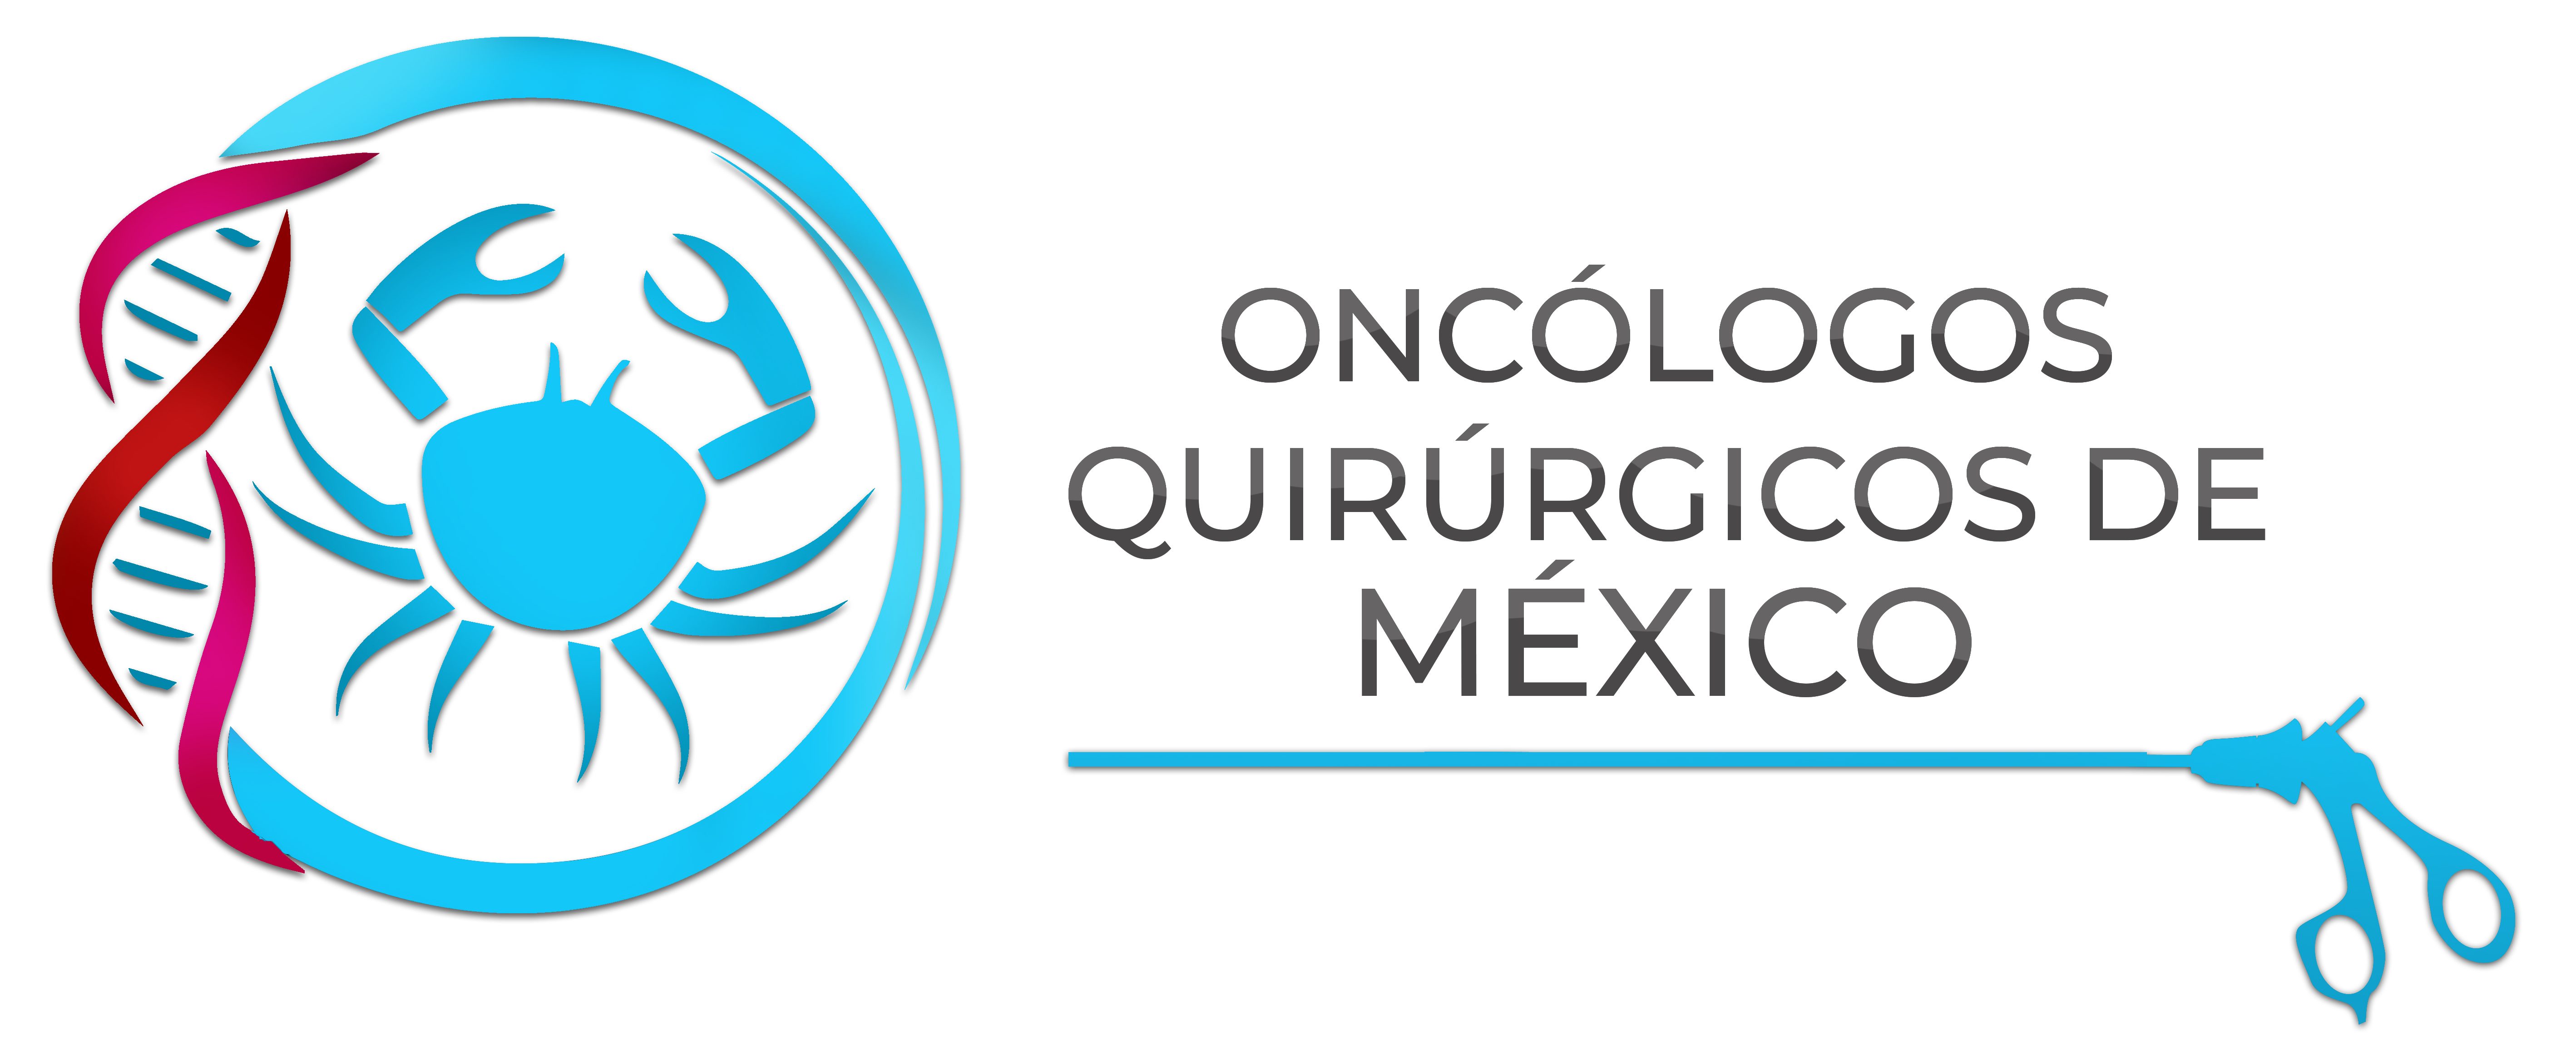 Oncólogos Quirúrgicos de México